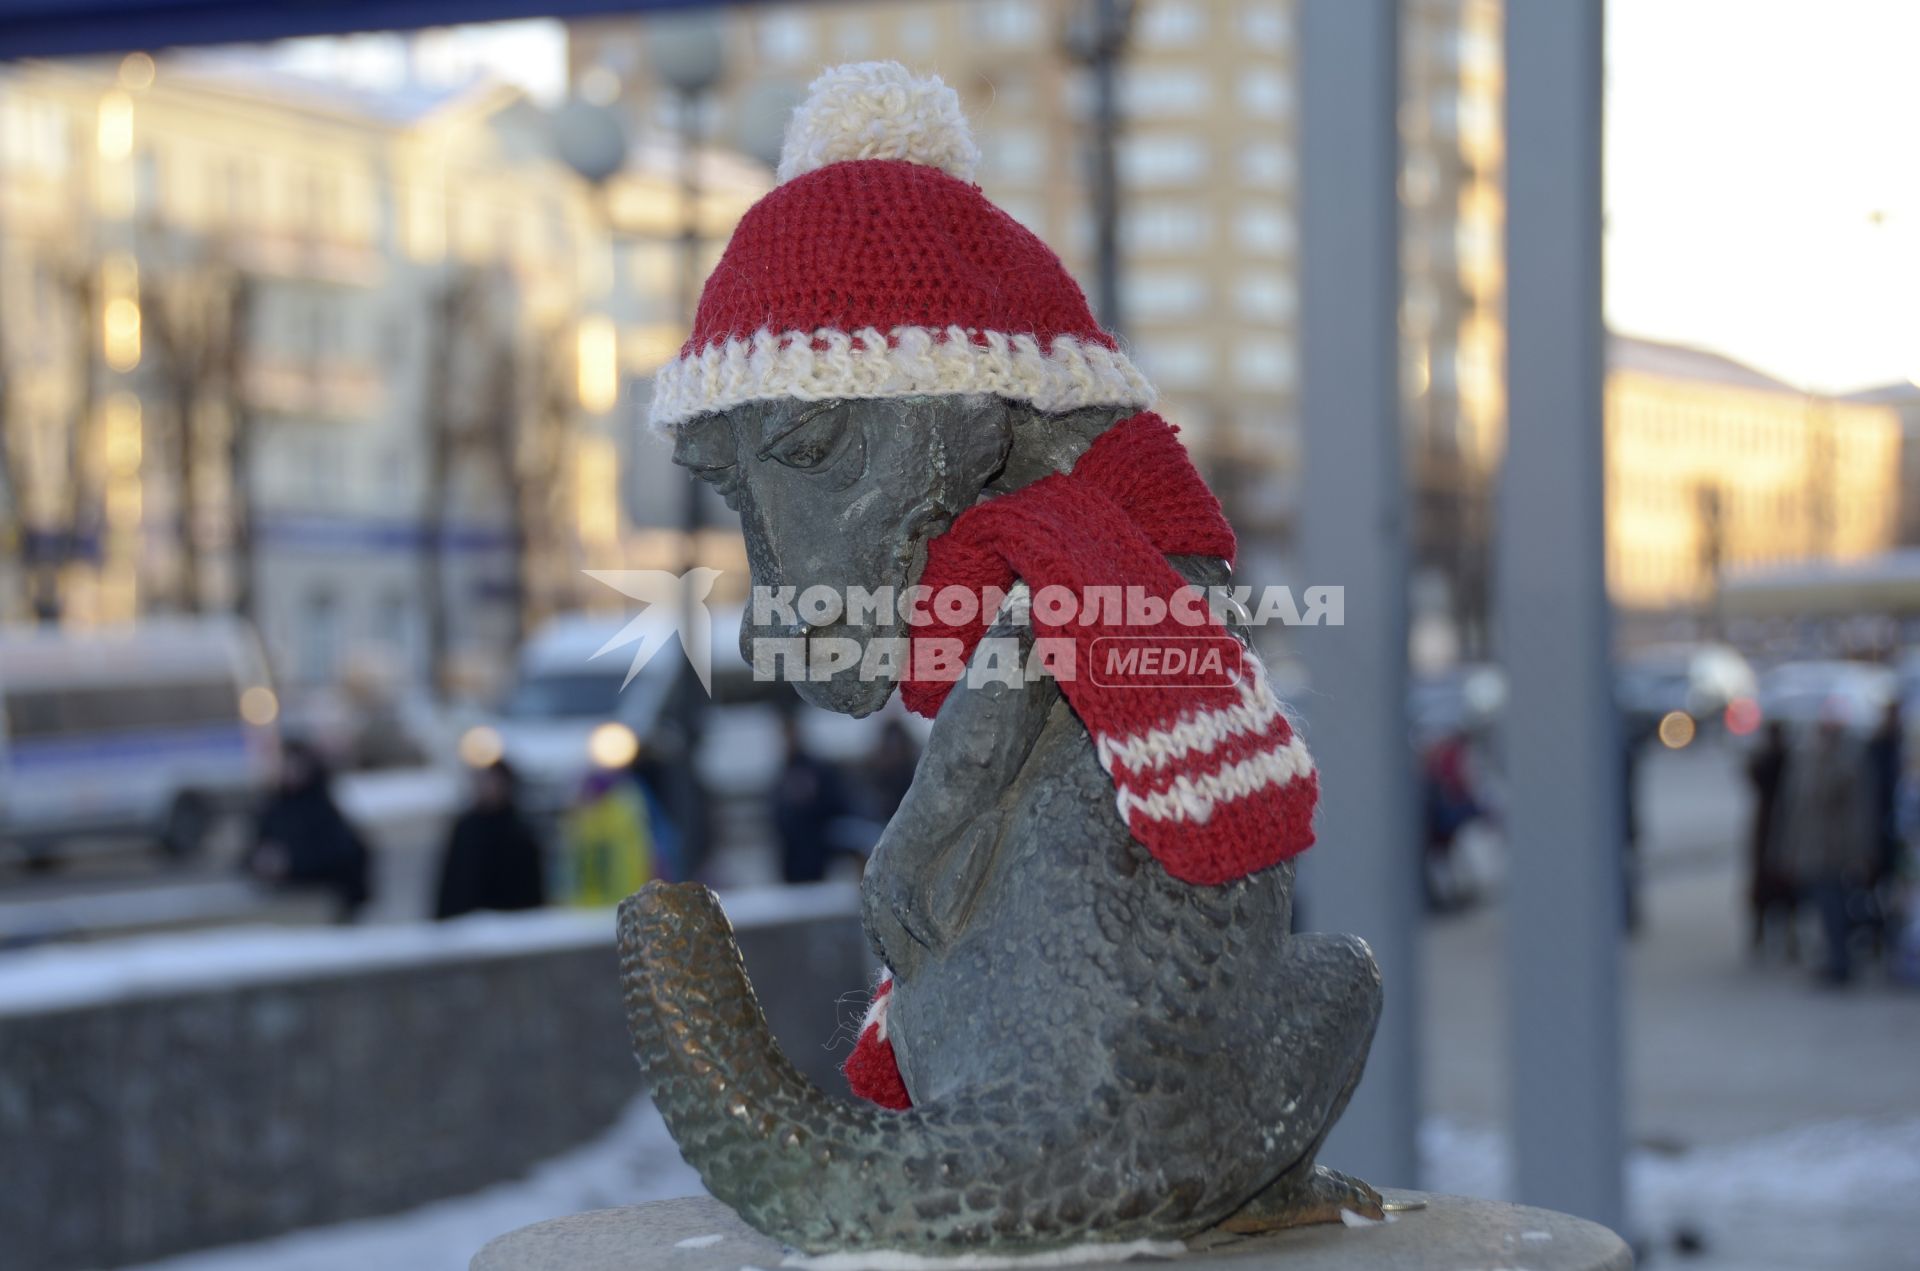 Тула. На  памятник`студенческому хвосту`у Тульского Государственного университета одели вязанные шапку и шарф.